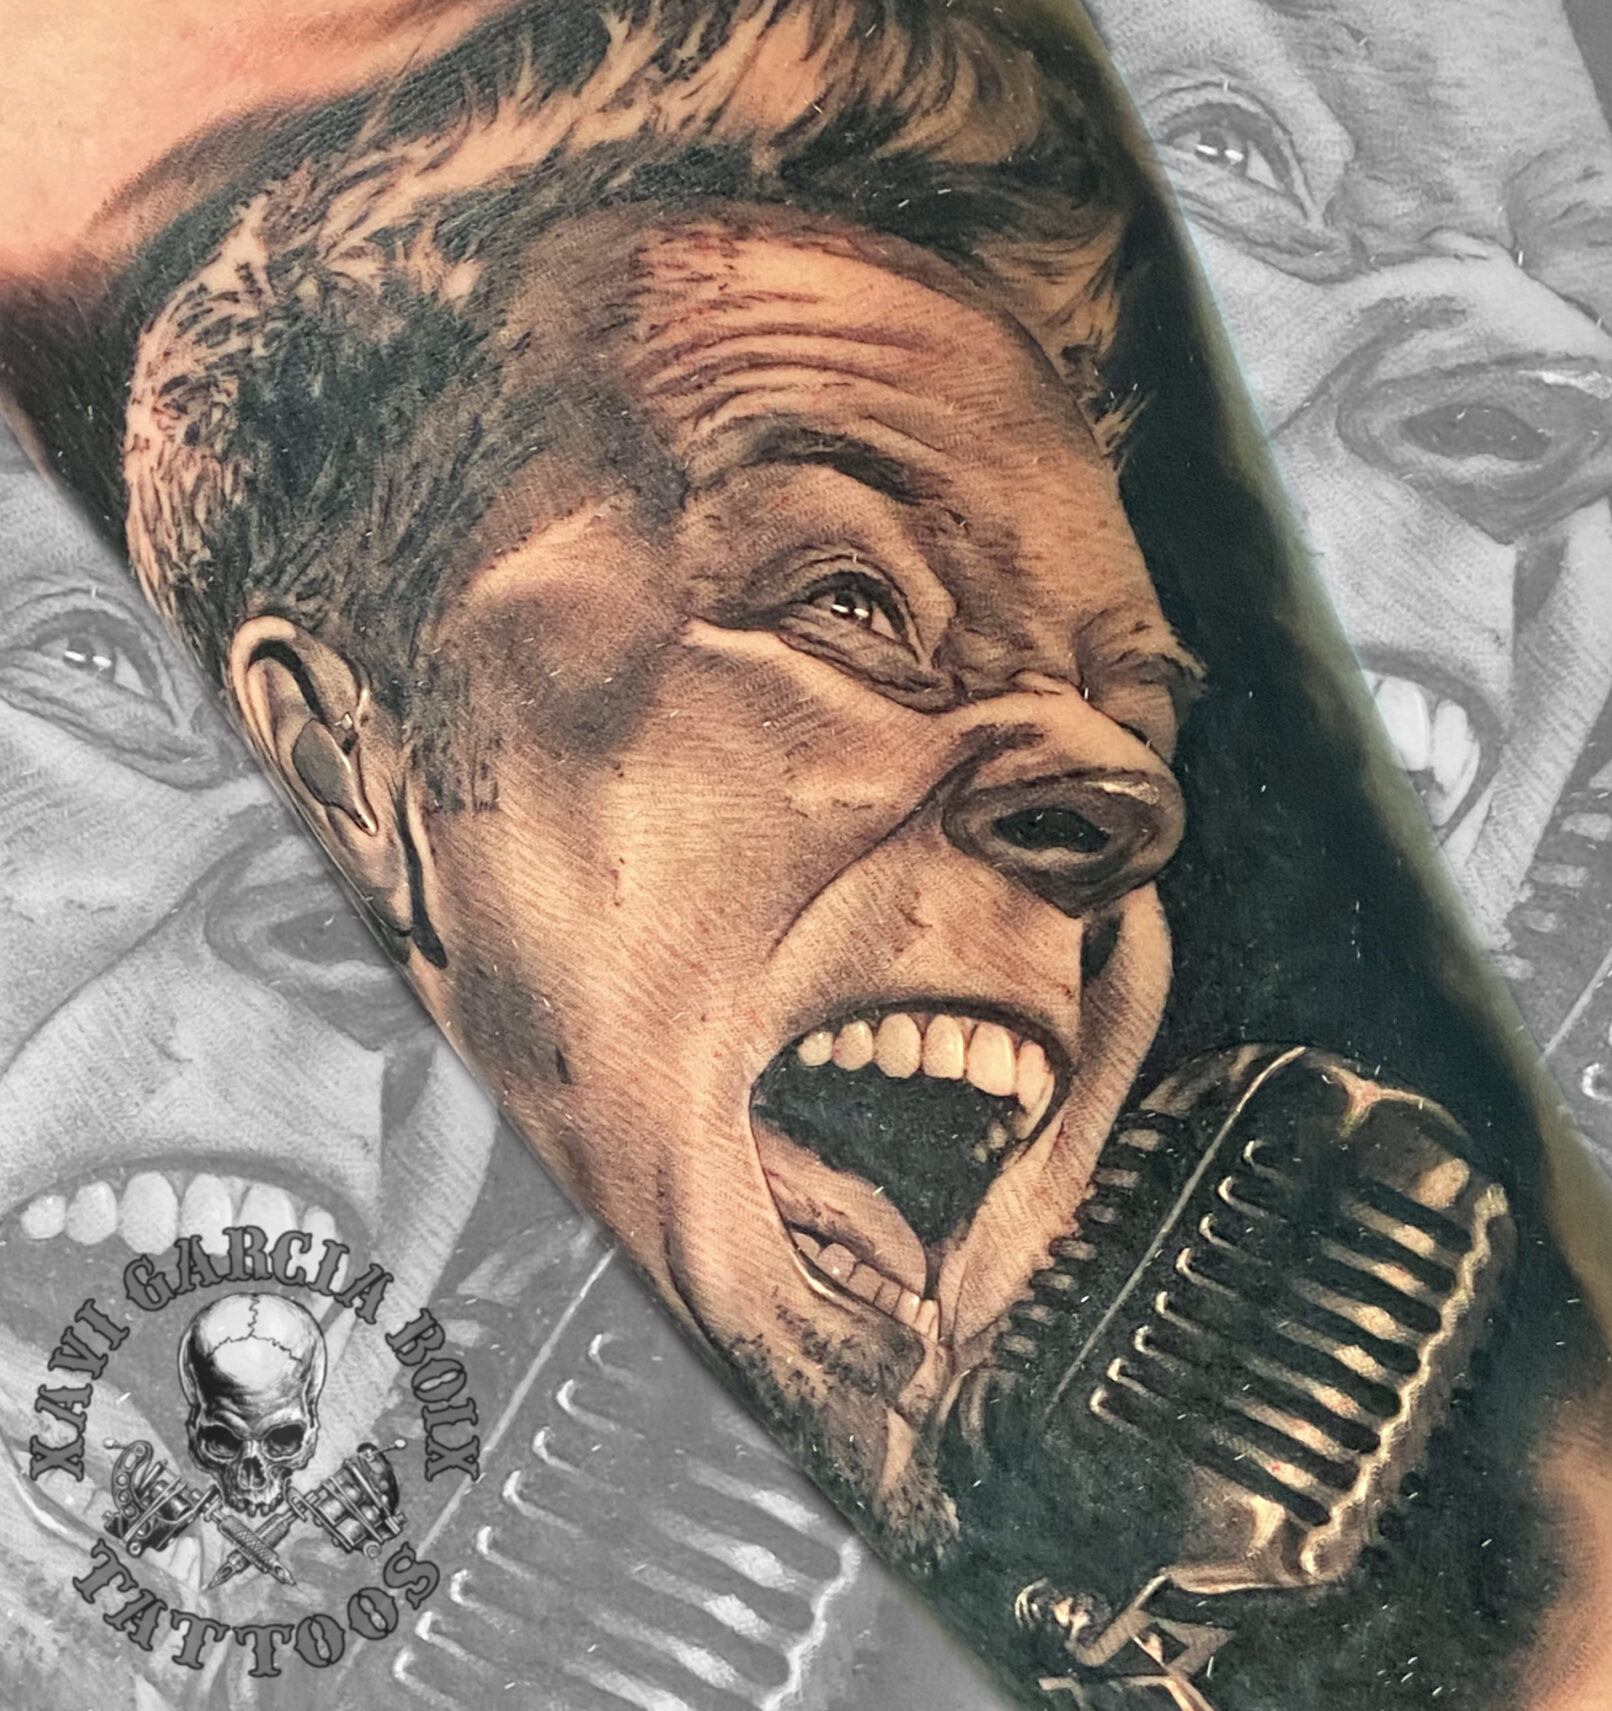 Tatuaje retrato James Hetfield - Metallica